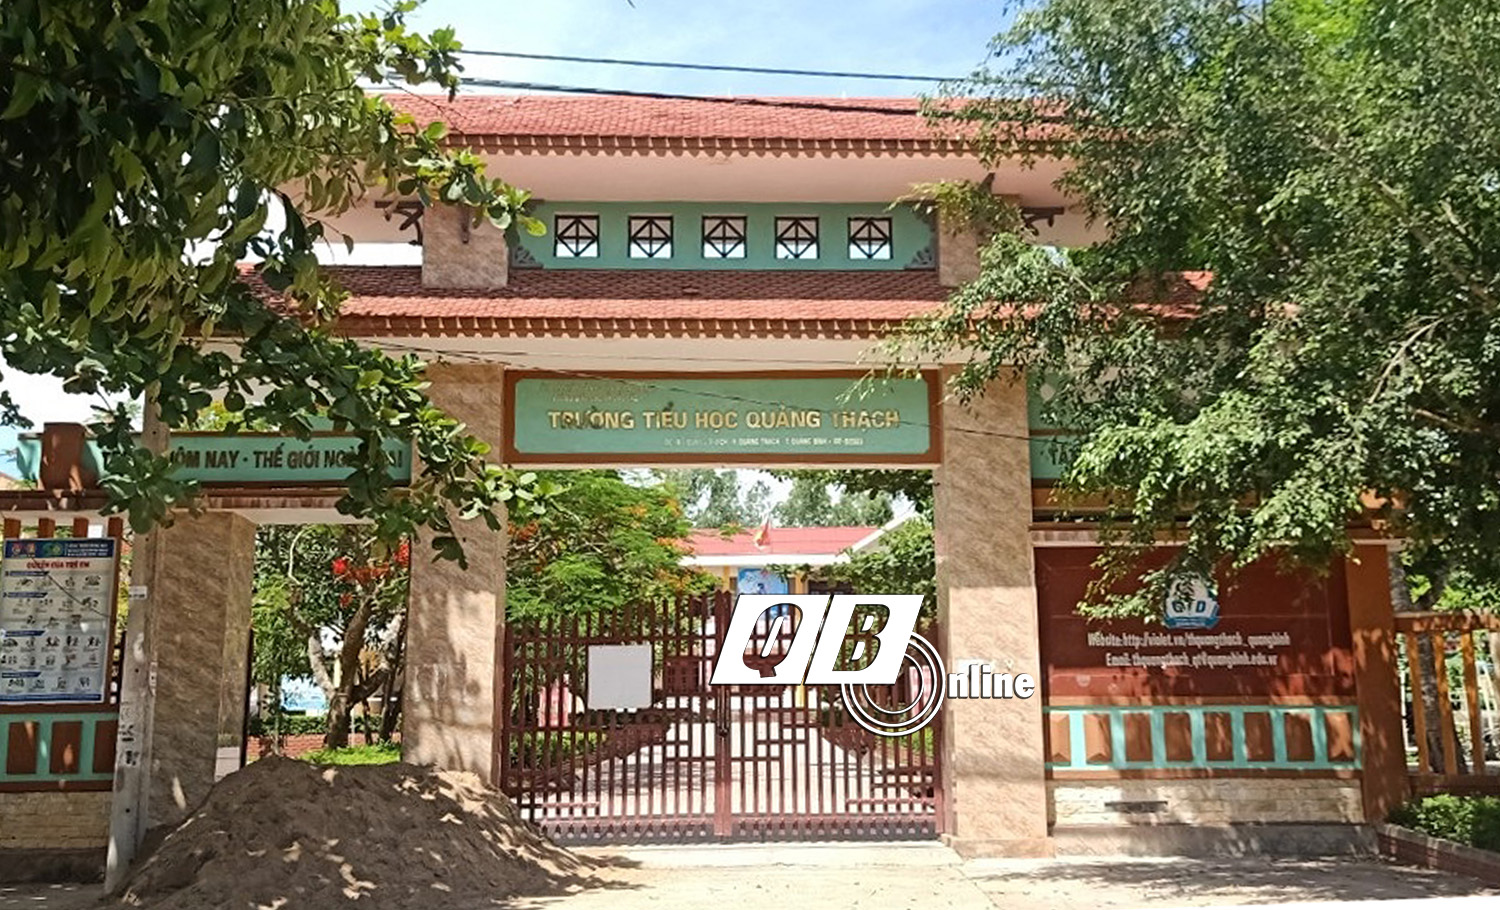 Lùm xùm tại Trường tiểu học Quảng Thạch